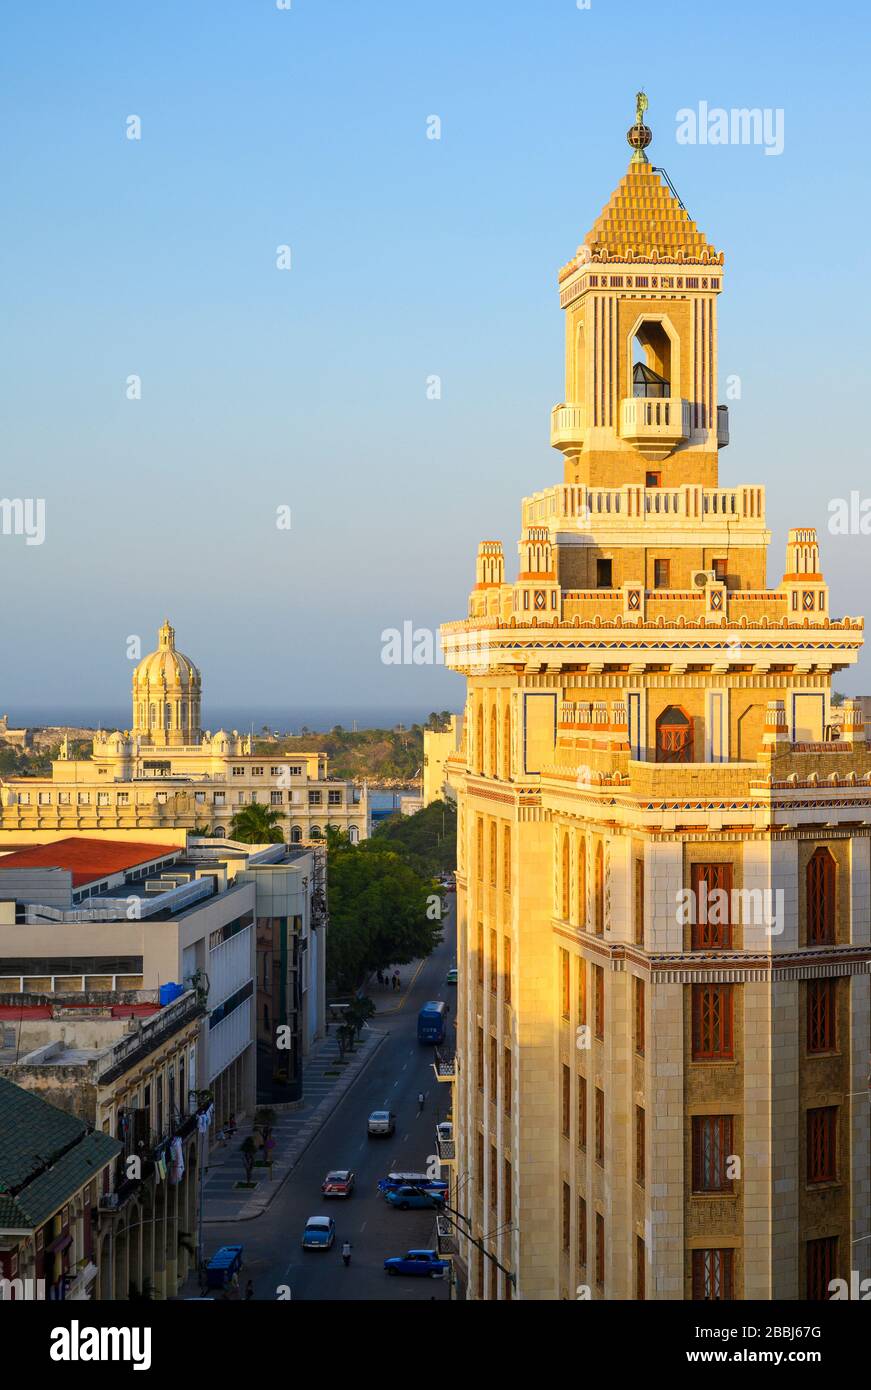 La célèbre art déco, Bacardi Building, Edificio Bacardi avec le Musée de la Révolution, anciennement le Palais présidentiel au-delà, la Havane Vieja, Cuba Banque D'Images